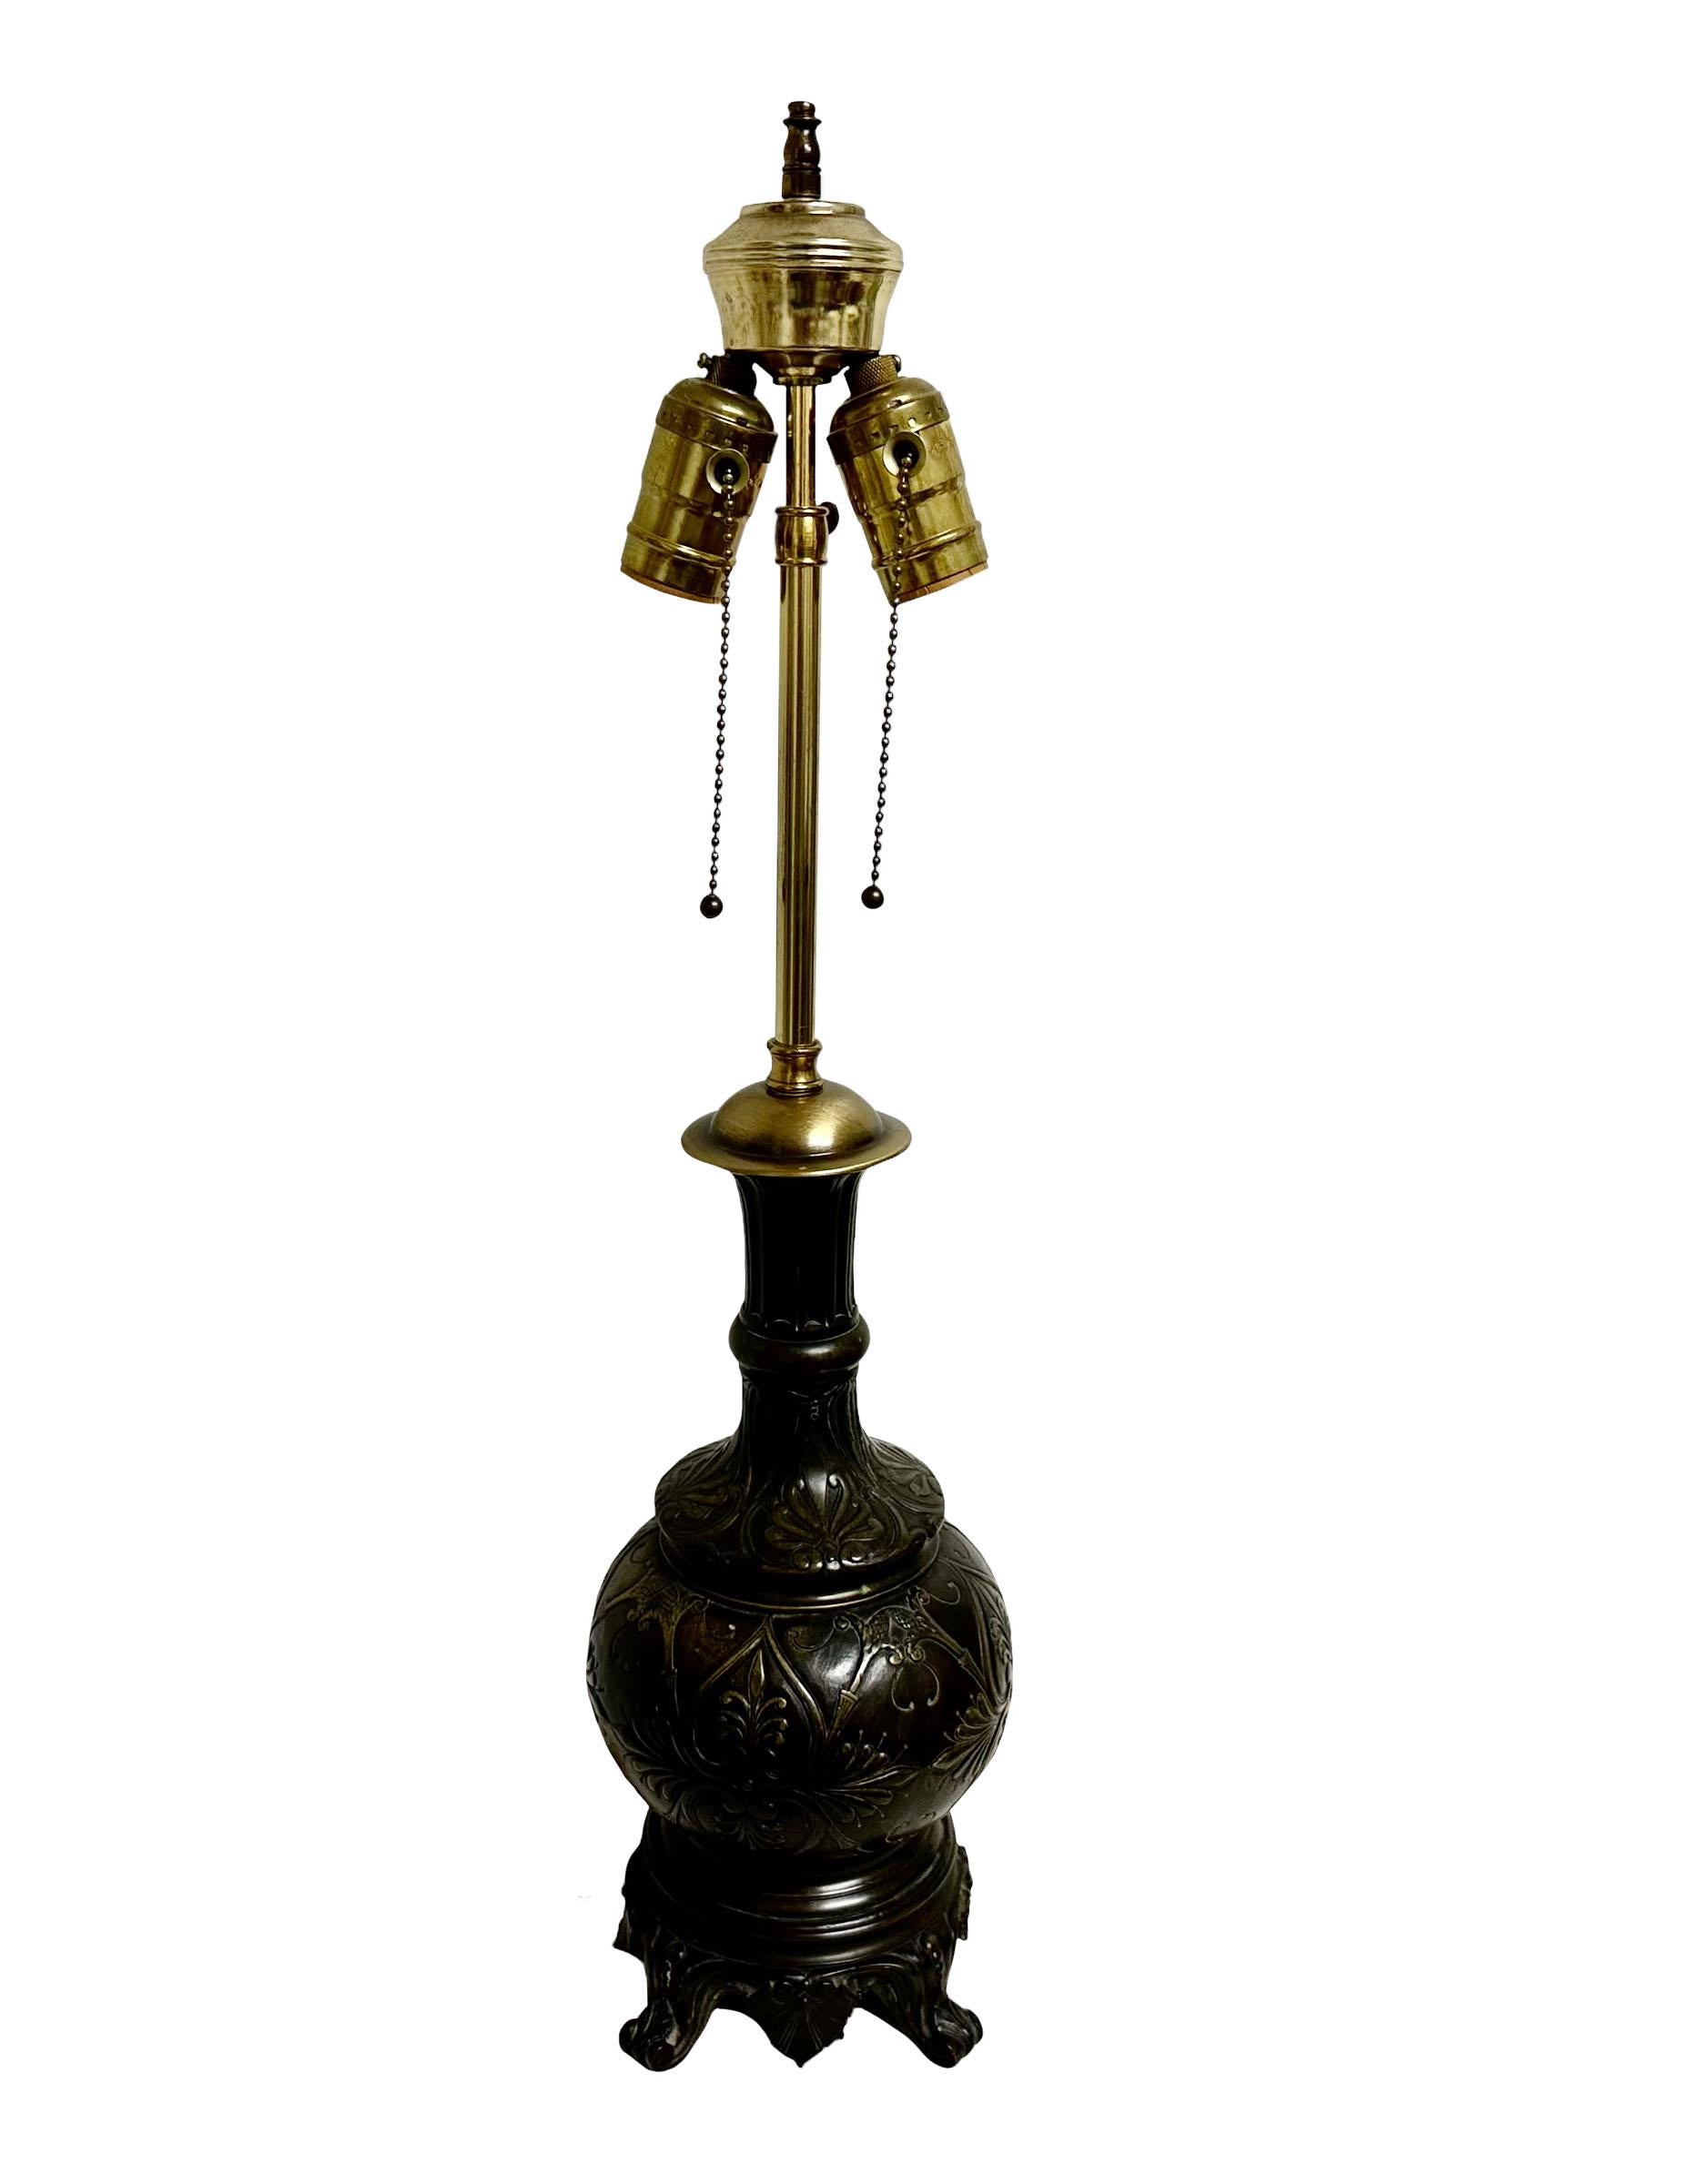 Eine wunderbare französische Empire-Lampe aus Bronze mit dunkler Patina. Die Lampe hat ein wunderschönes Empire-Design auf der ganzen Linie. Neuer Stecker und neues Kabel.